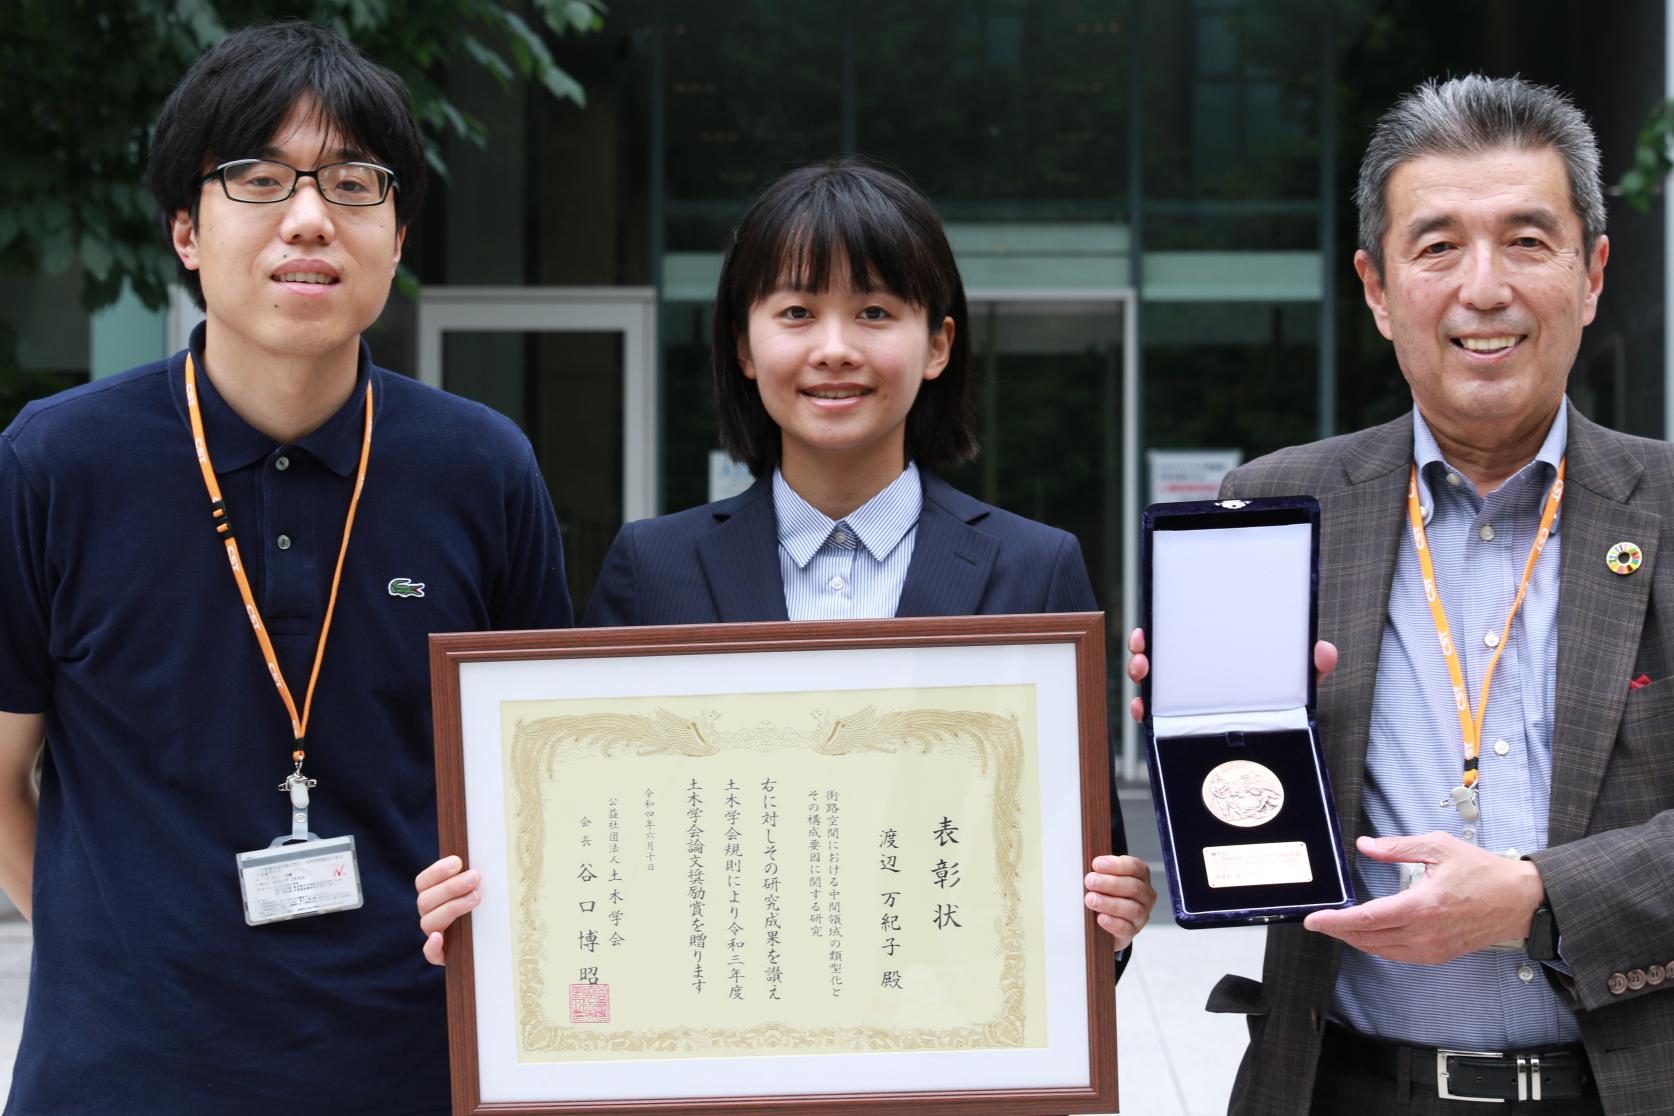 まちづくり工学専攻博士後期課程を修了した渡辺万紀子さんが、土木学会論文奨励賞を受賞しました。